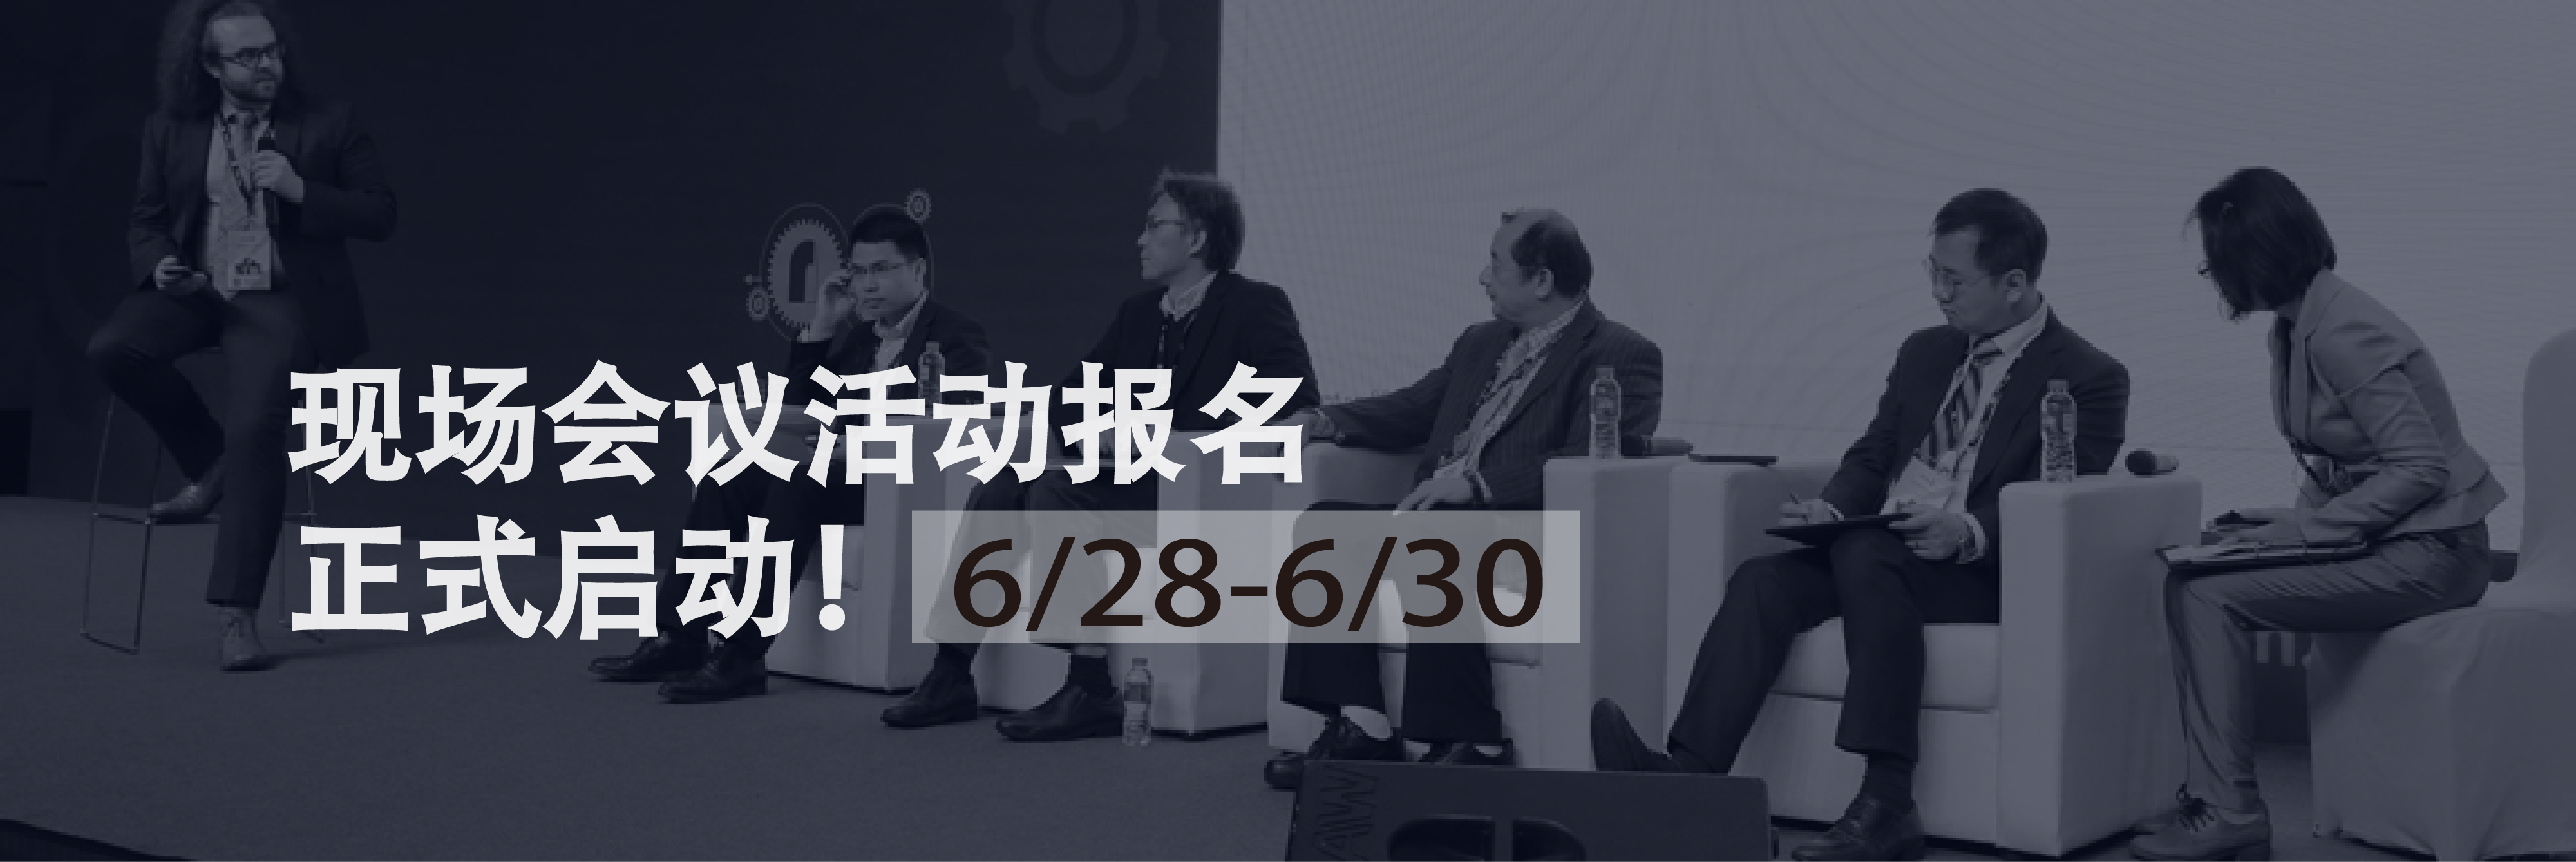 CEE2019北京消费电子展六月启幕,您的产品将在世界上留名